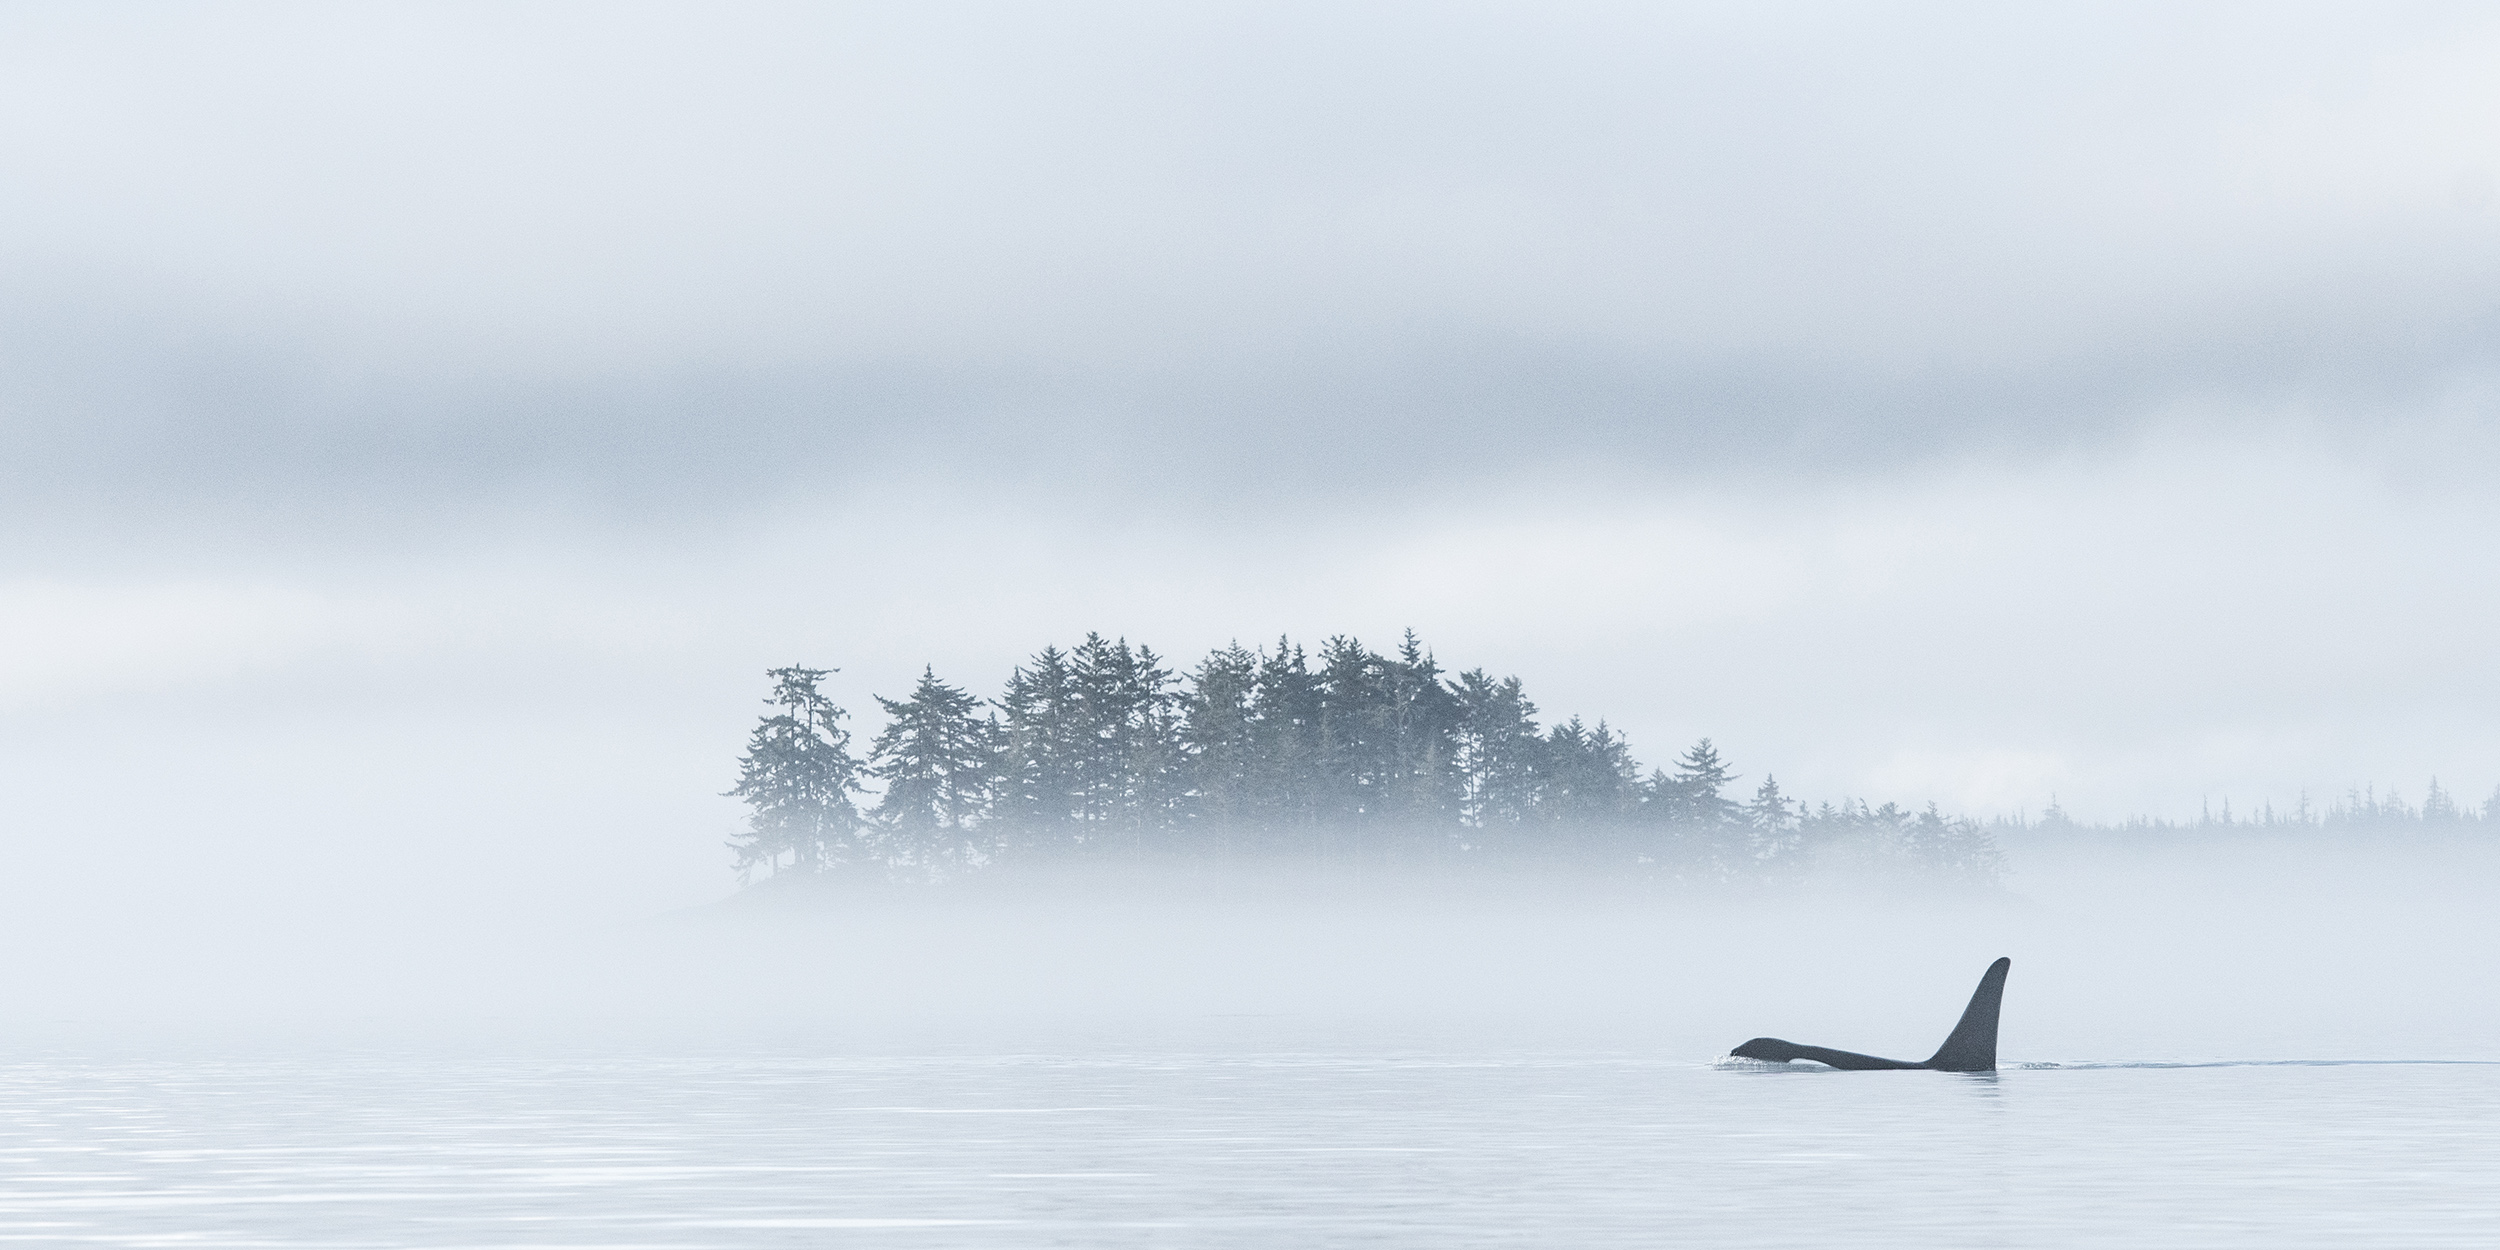 Orca killer whale in the fog